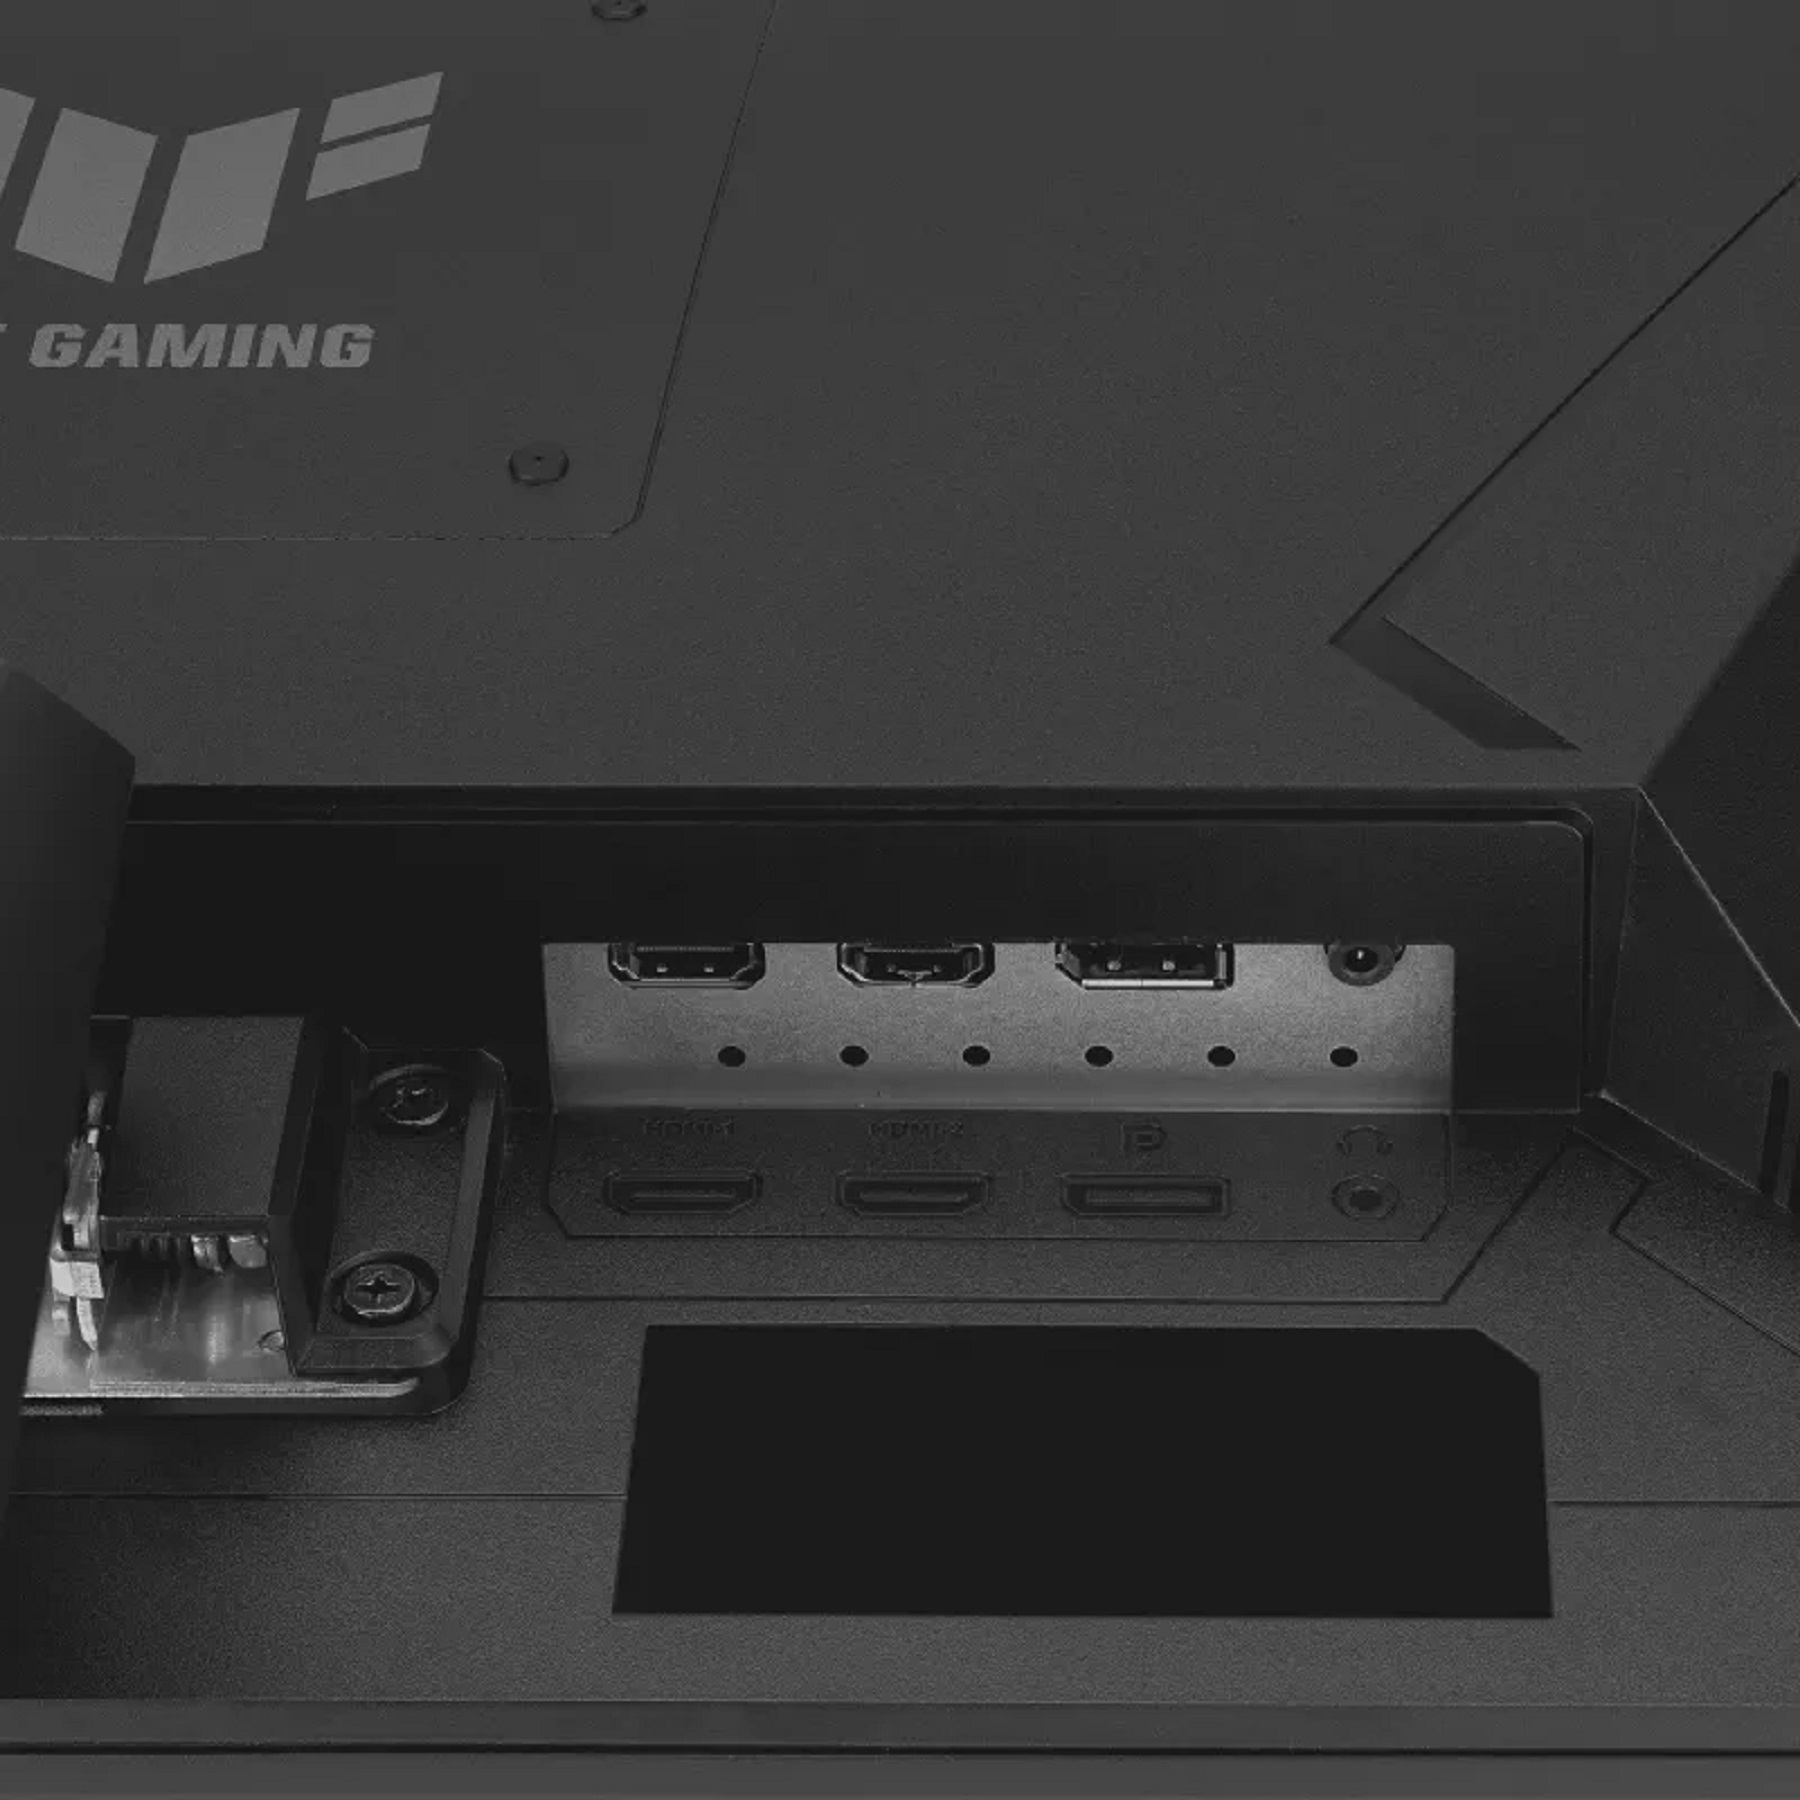 مانیتور ایسوس مدل TUF Gaming VG279Q3A سایز 27 اینچ